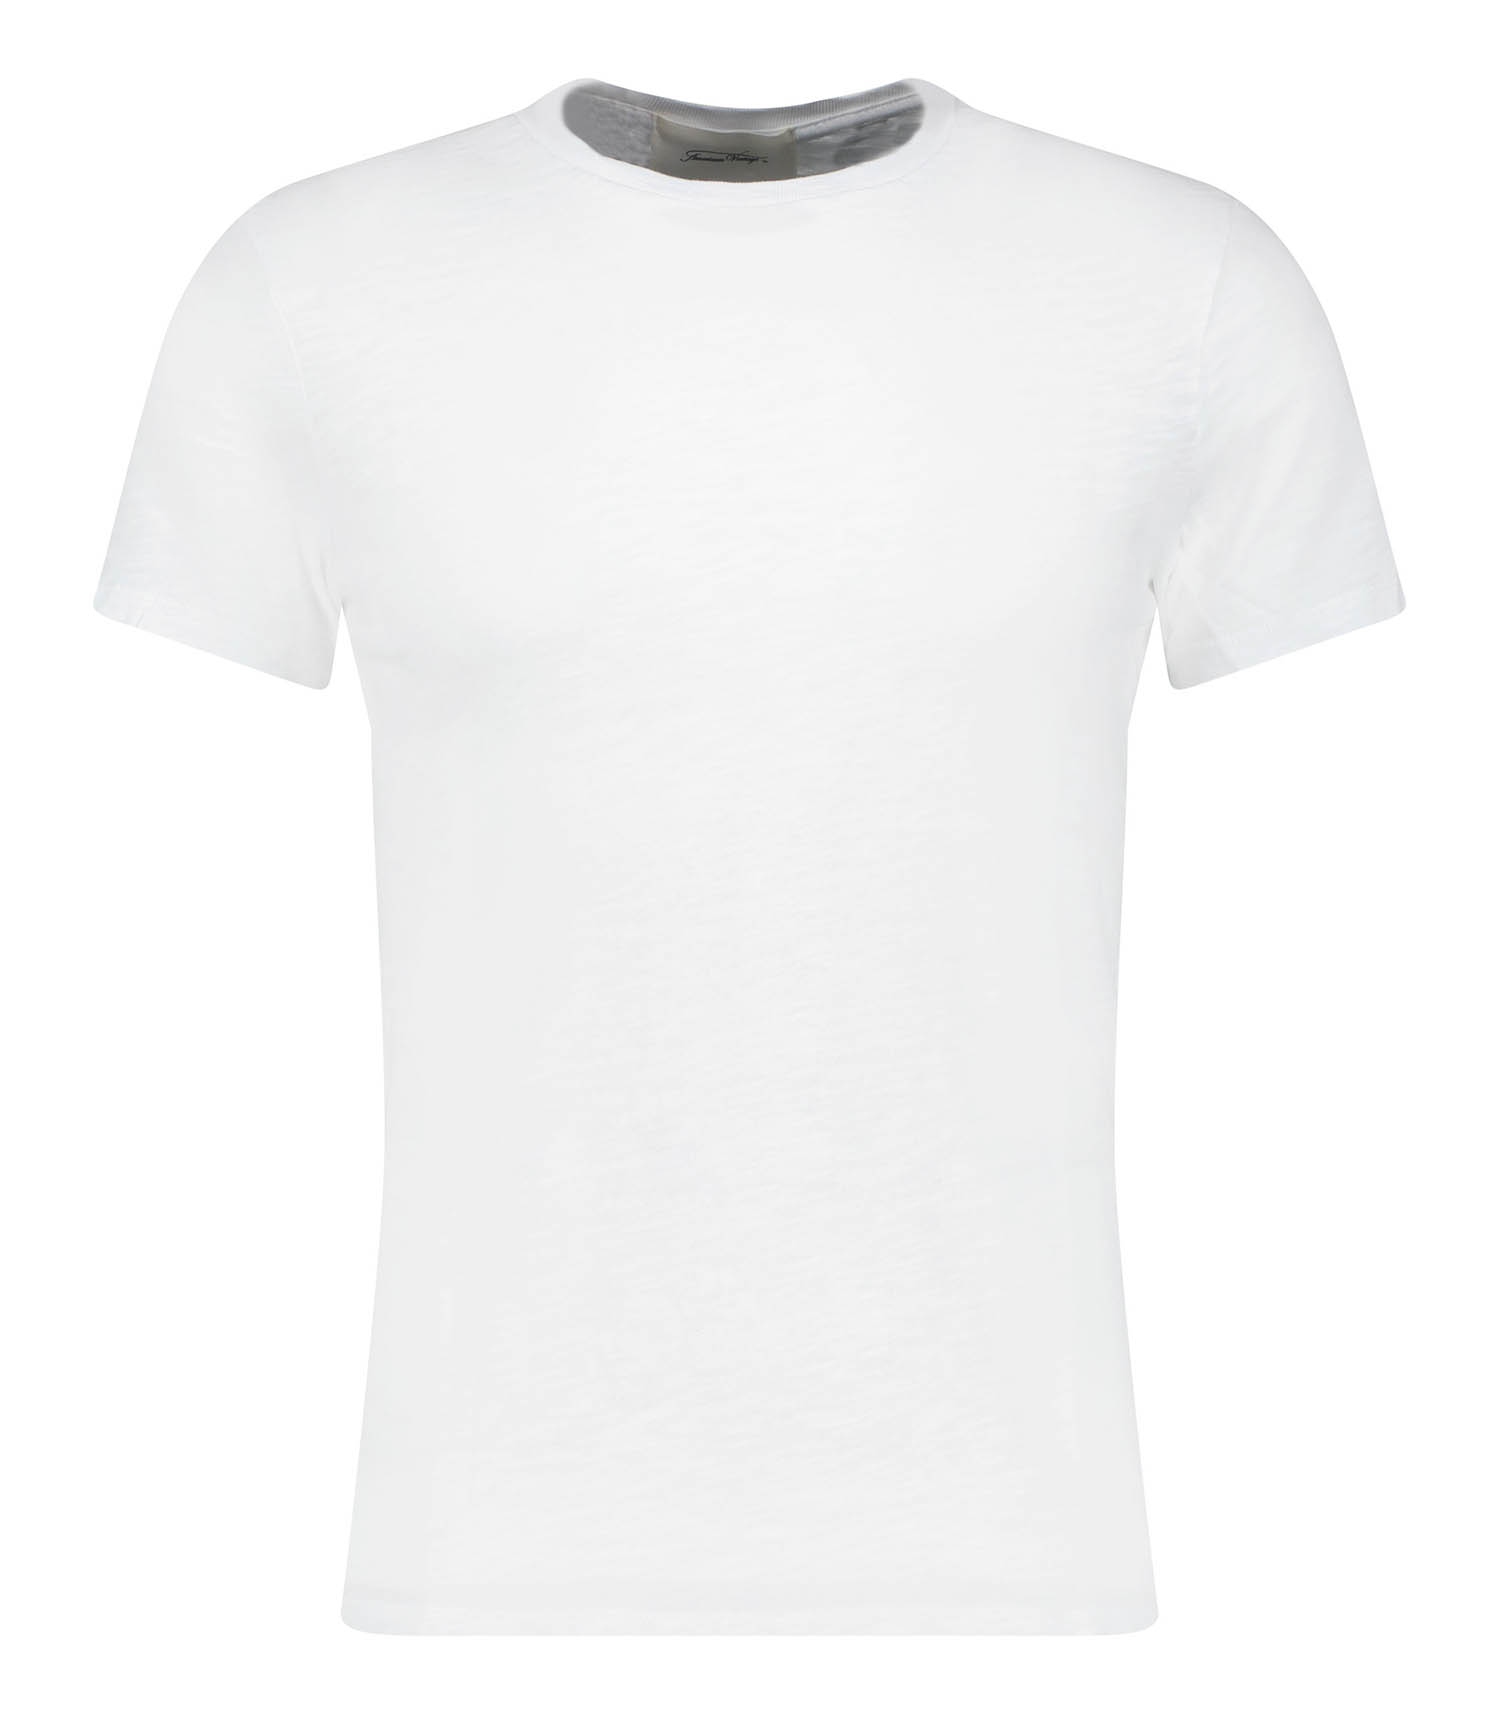 10 marques de t-shirts pour homme à connaître